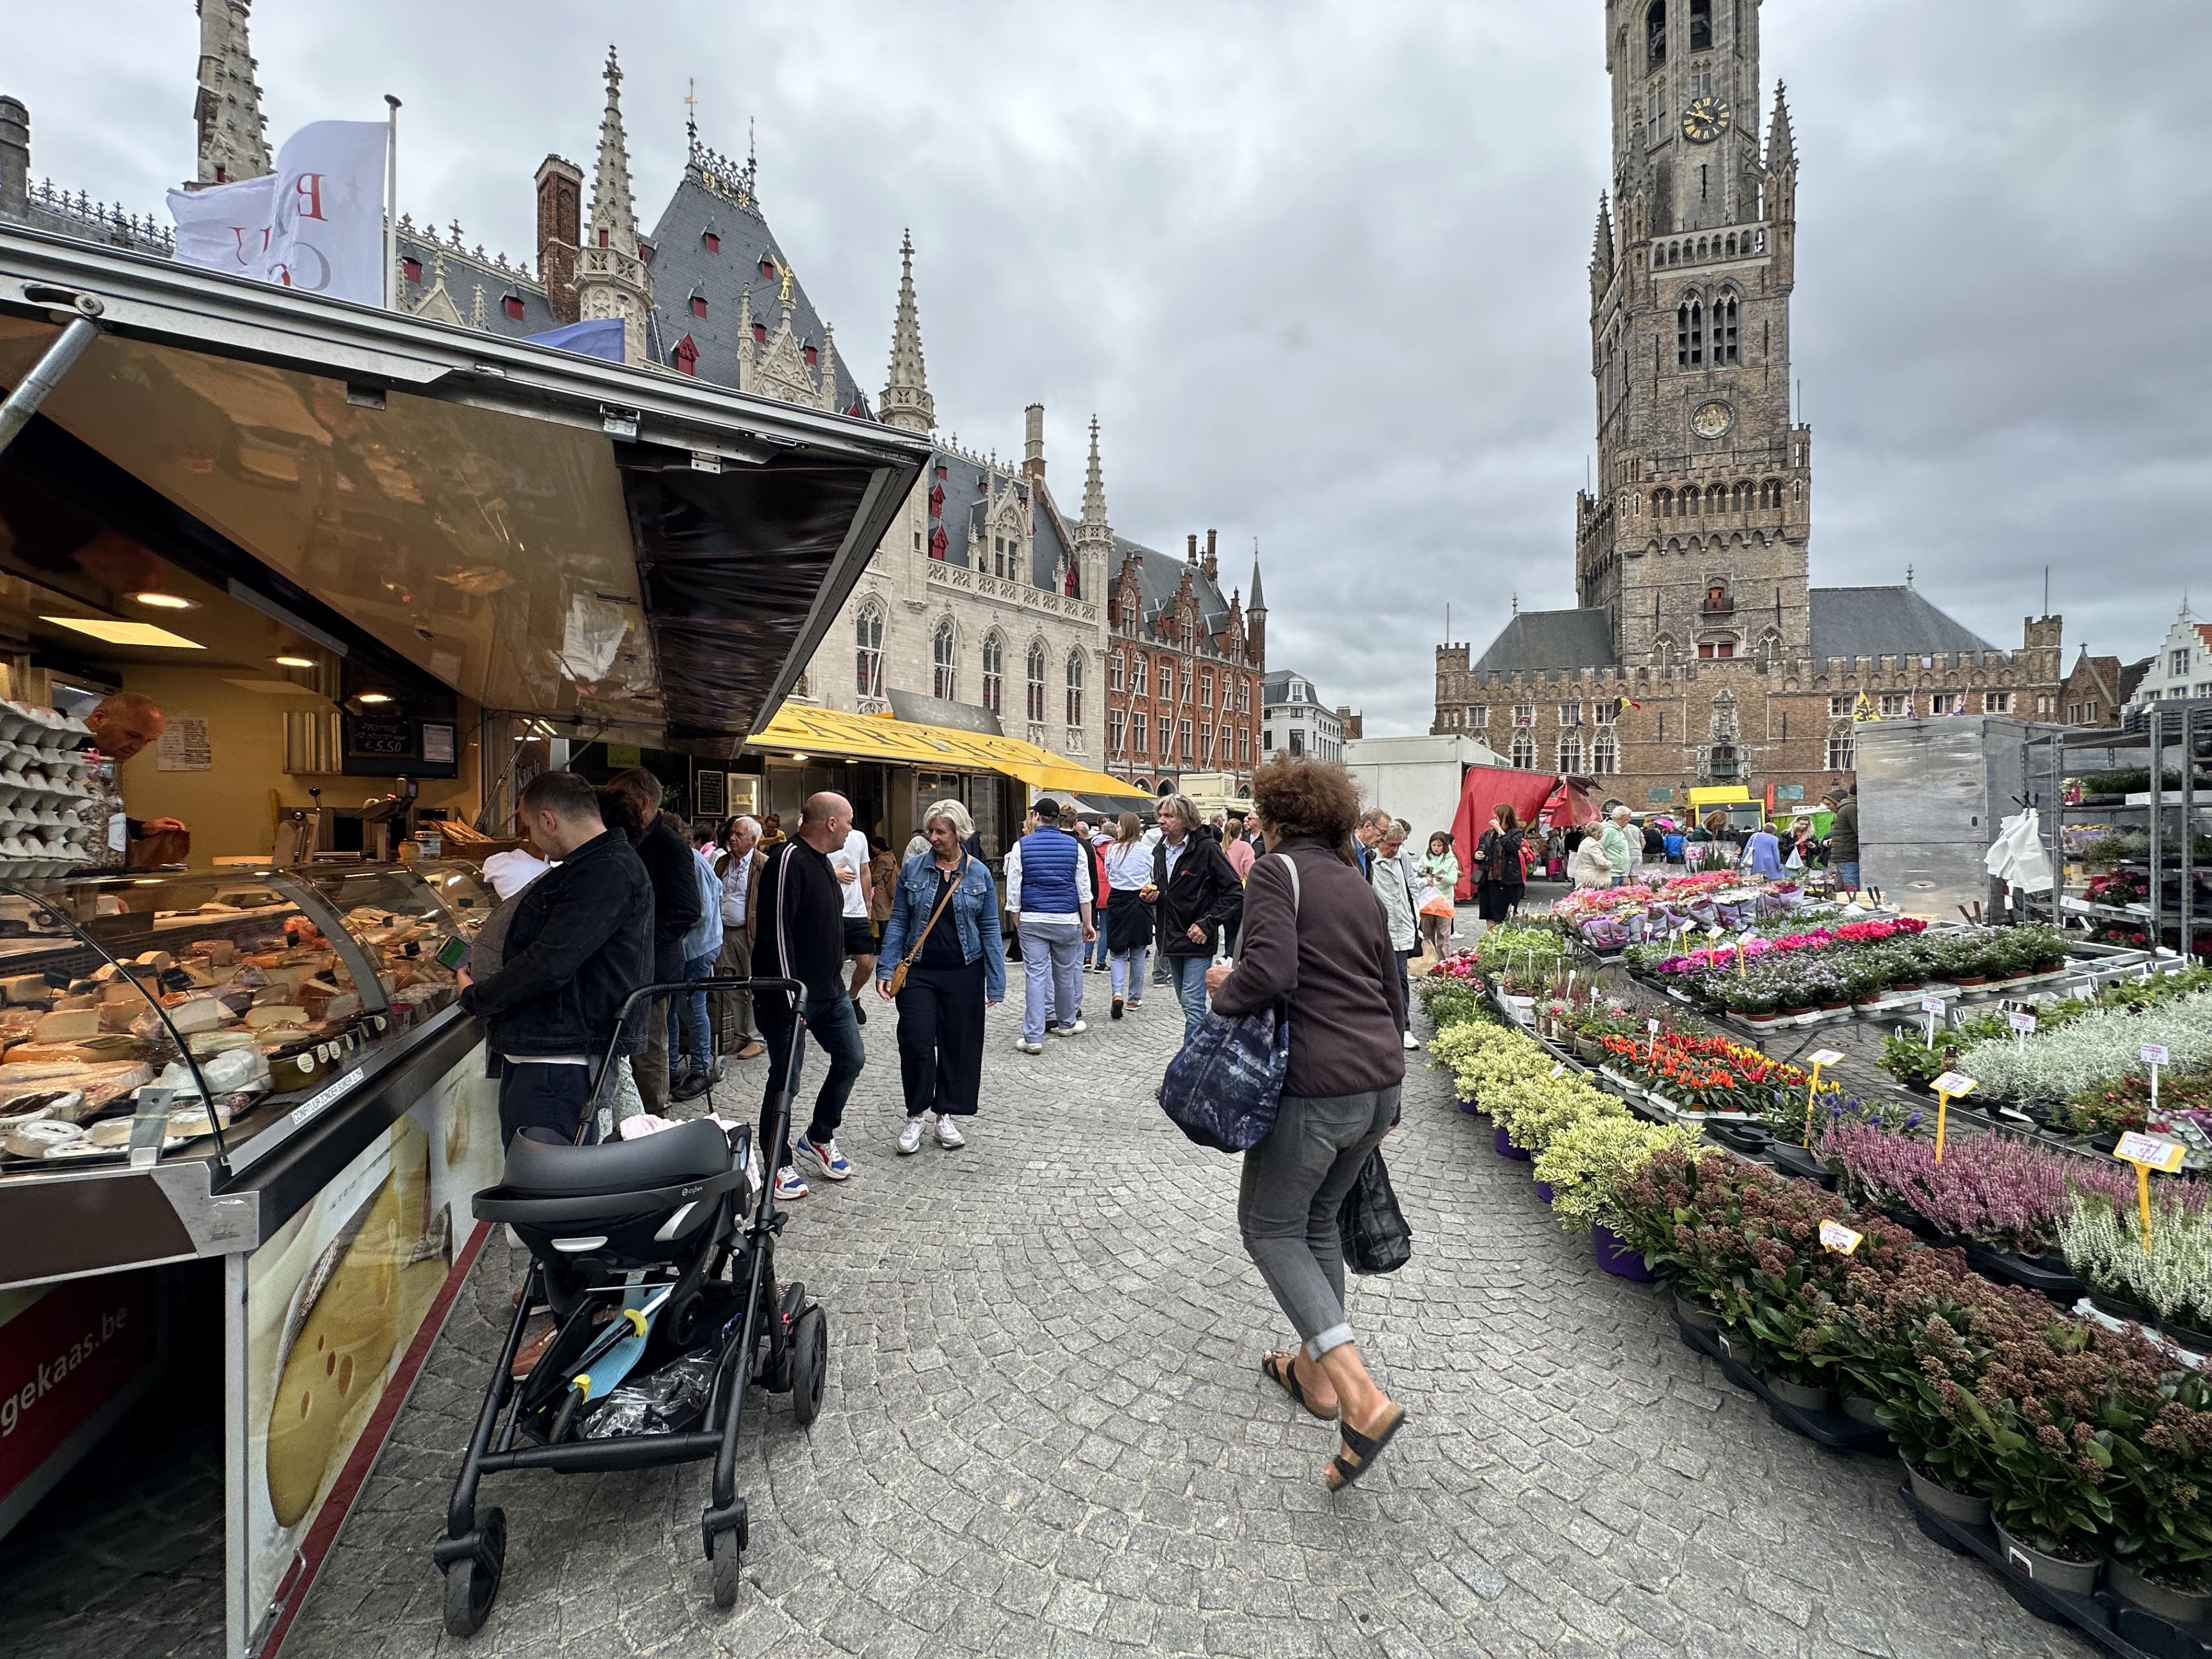 Market in Bruges main square